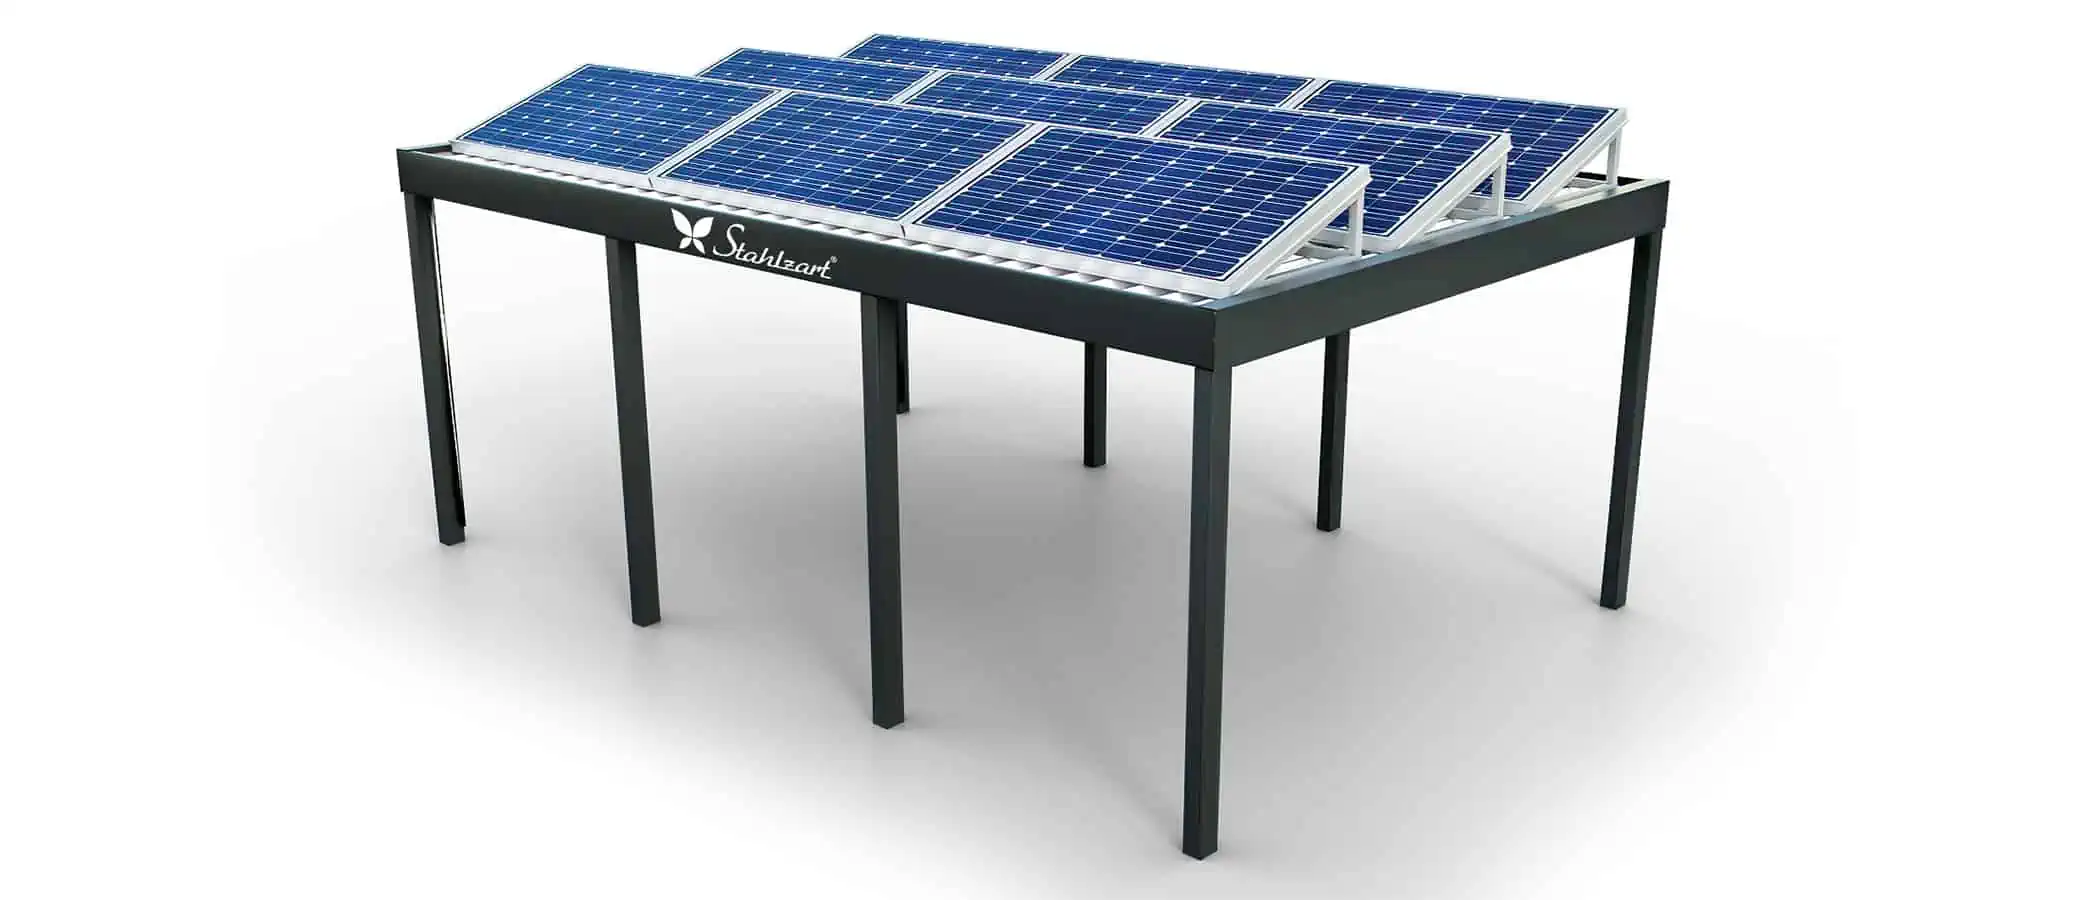 solar-carport-mit-flachdach-carports-pv-anlage-solaranlage-photovoltaik-garagen-garagendach-solarcarport-installation-solarmodulen-solarcarports-flaechen-dach-e-auto-loesung-offen-modern-stahlzart